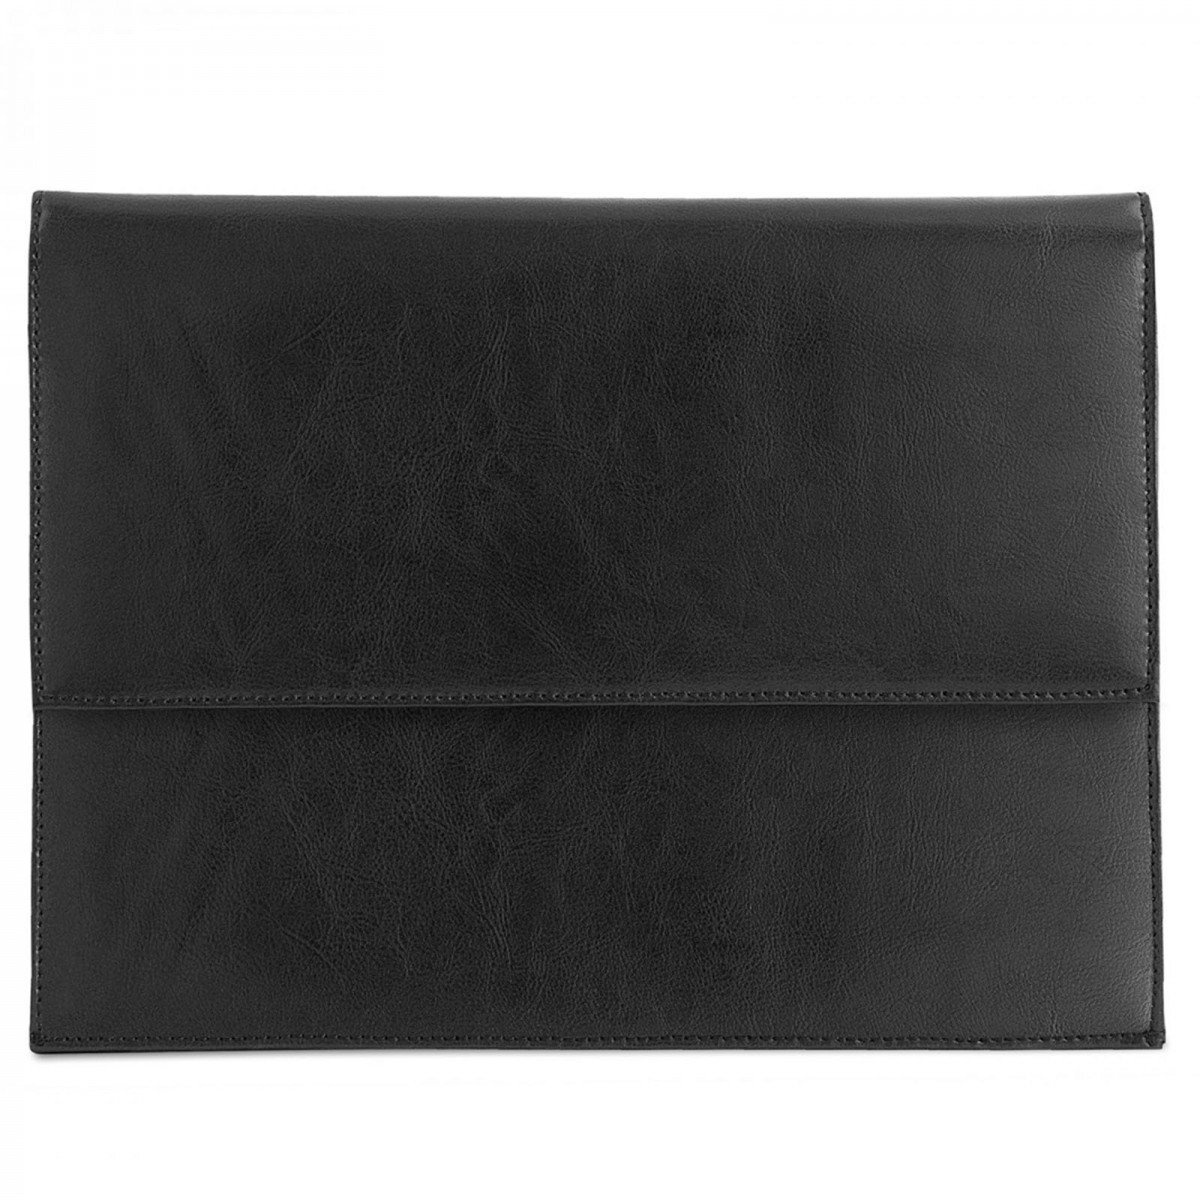 ROYALZ Leder Schutztasche für Apple iPad Pro 11 Schutzhülle 11 Zoll Tablet Sleeve Vintage Tasche Hülle Cover, Farbe:Schwarz